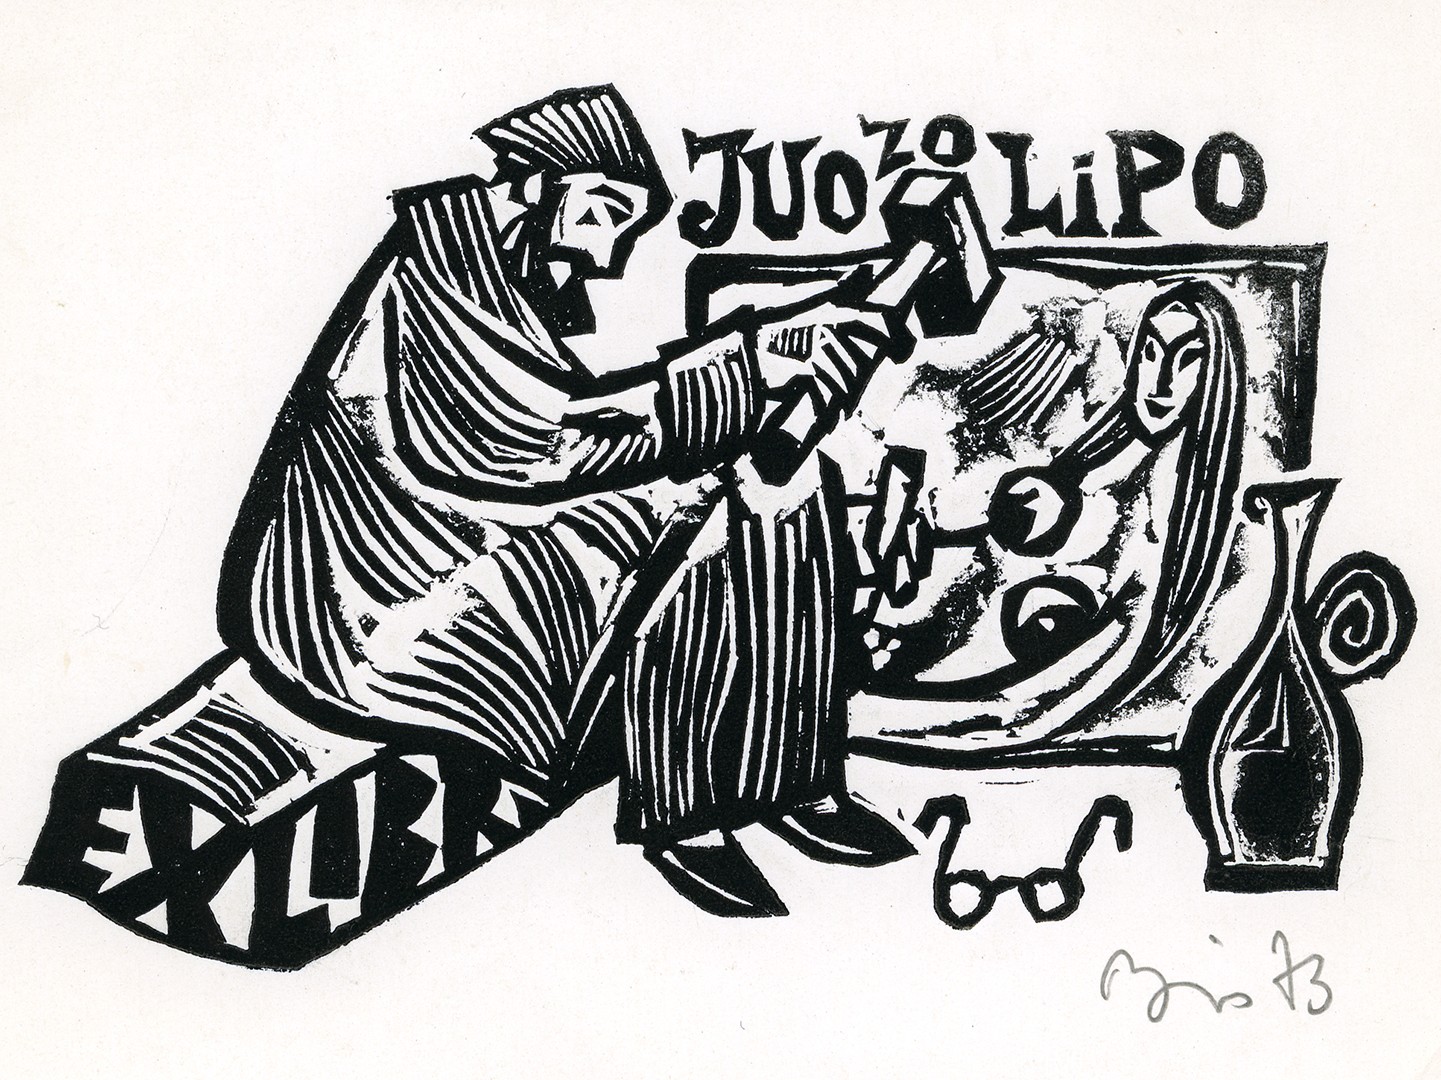 Juozo Lipo ekslibrisas. Vilnius, 1973 m. Popierius, linoraižinys; 75 x 118 (97 x127) mm. Lietuvos nacionalinis muziejus